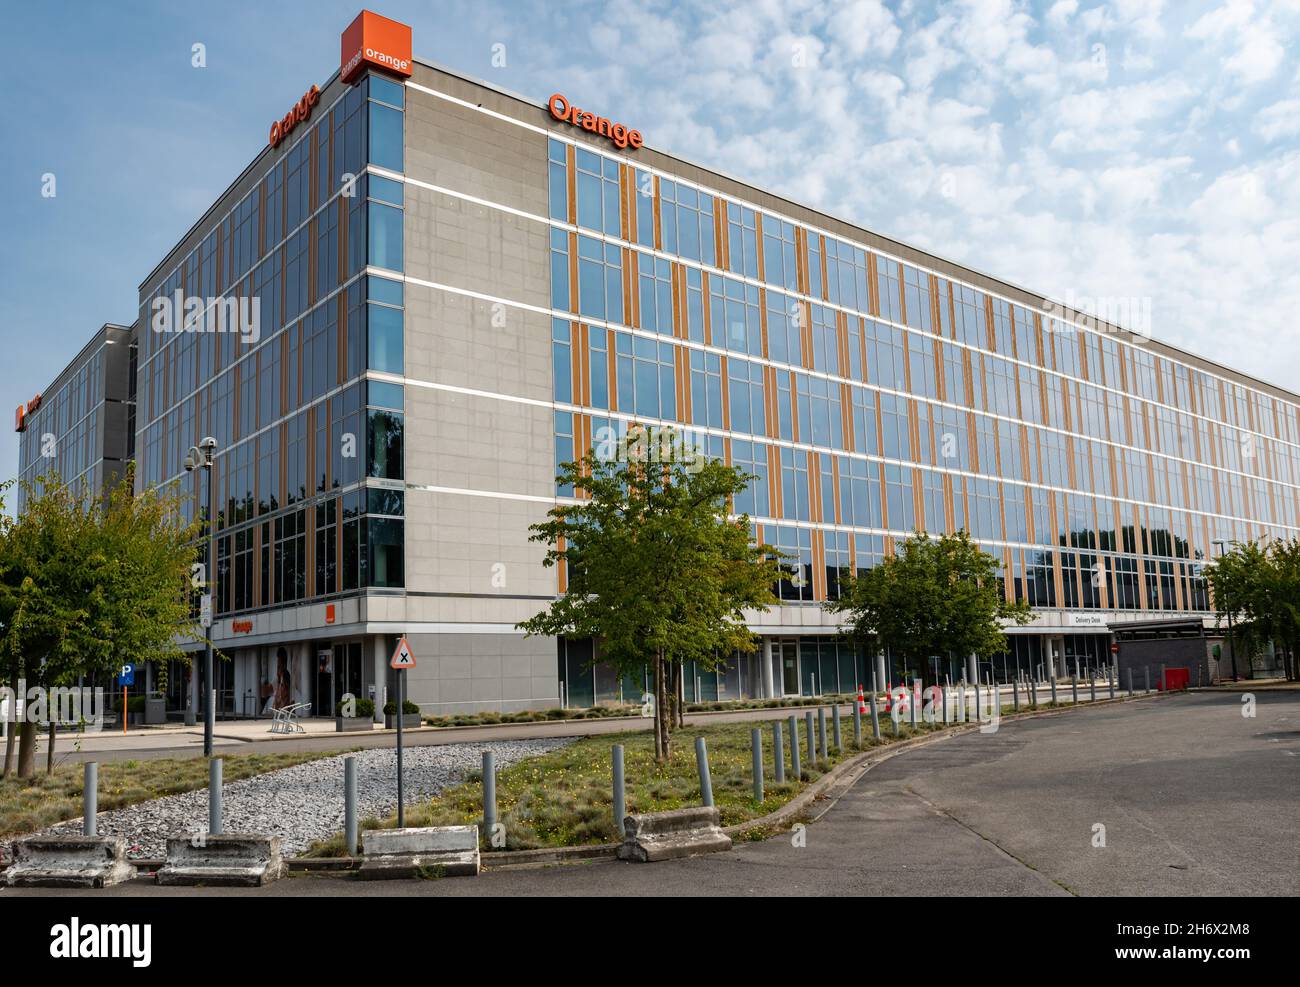 Evere, région de Bruxelles-capitale, Belgique - 20 09 2021: Siège social de la société Orange Telecom Banque D'Images